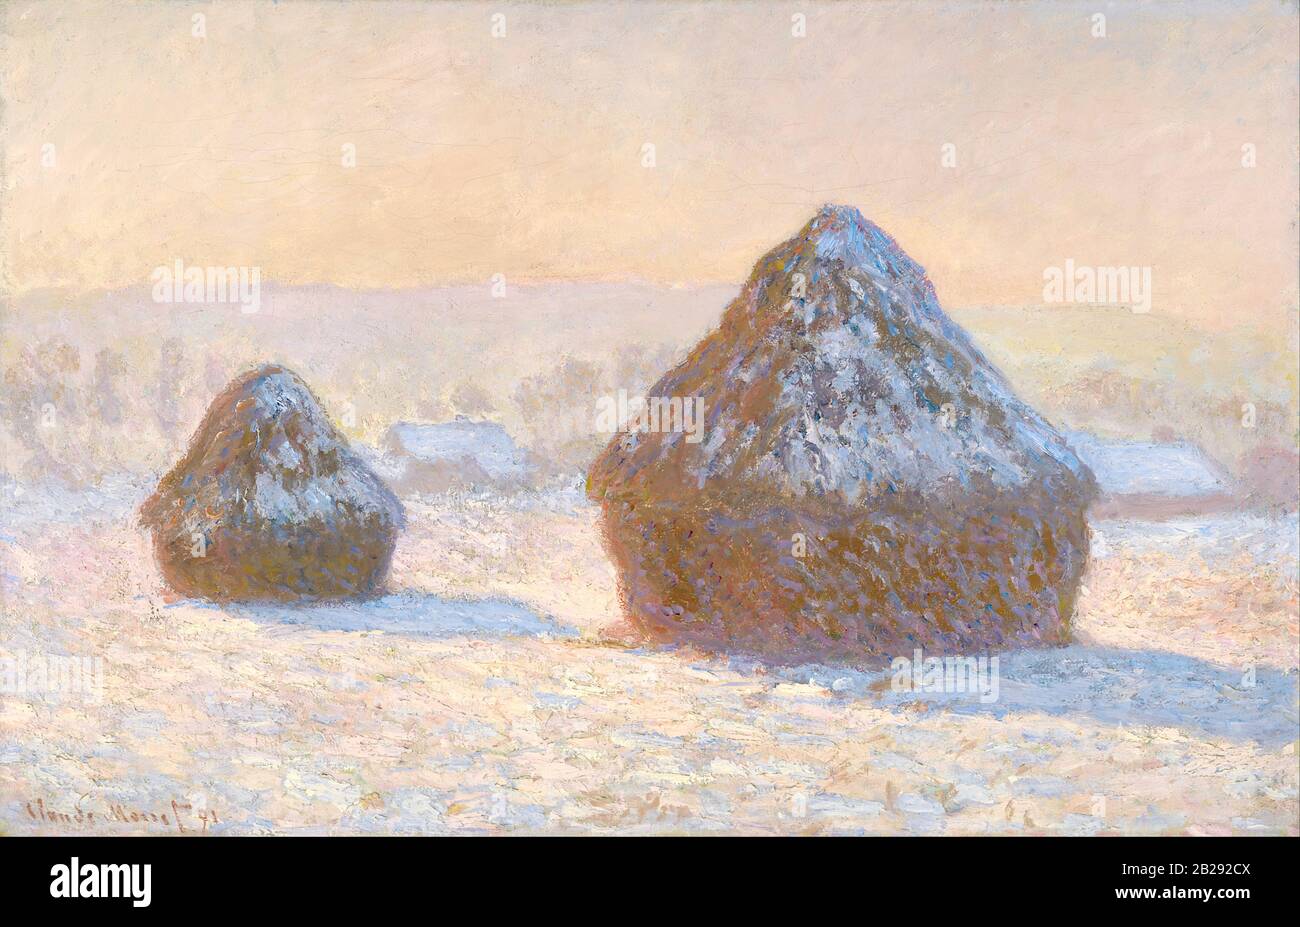 Wheatstacks, Snow Effect, Morning (1891) Pittura di Claude Monet - immagine Ad altissima risoluzione e qualità Foto Stock